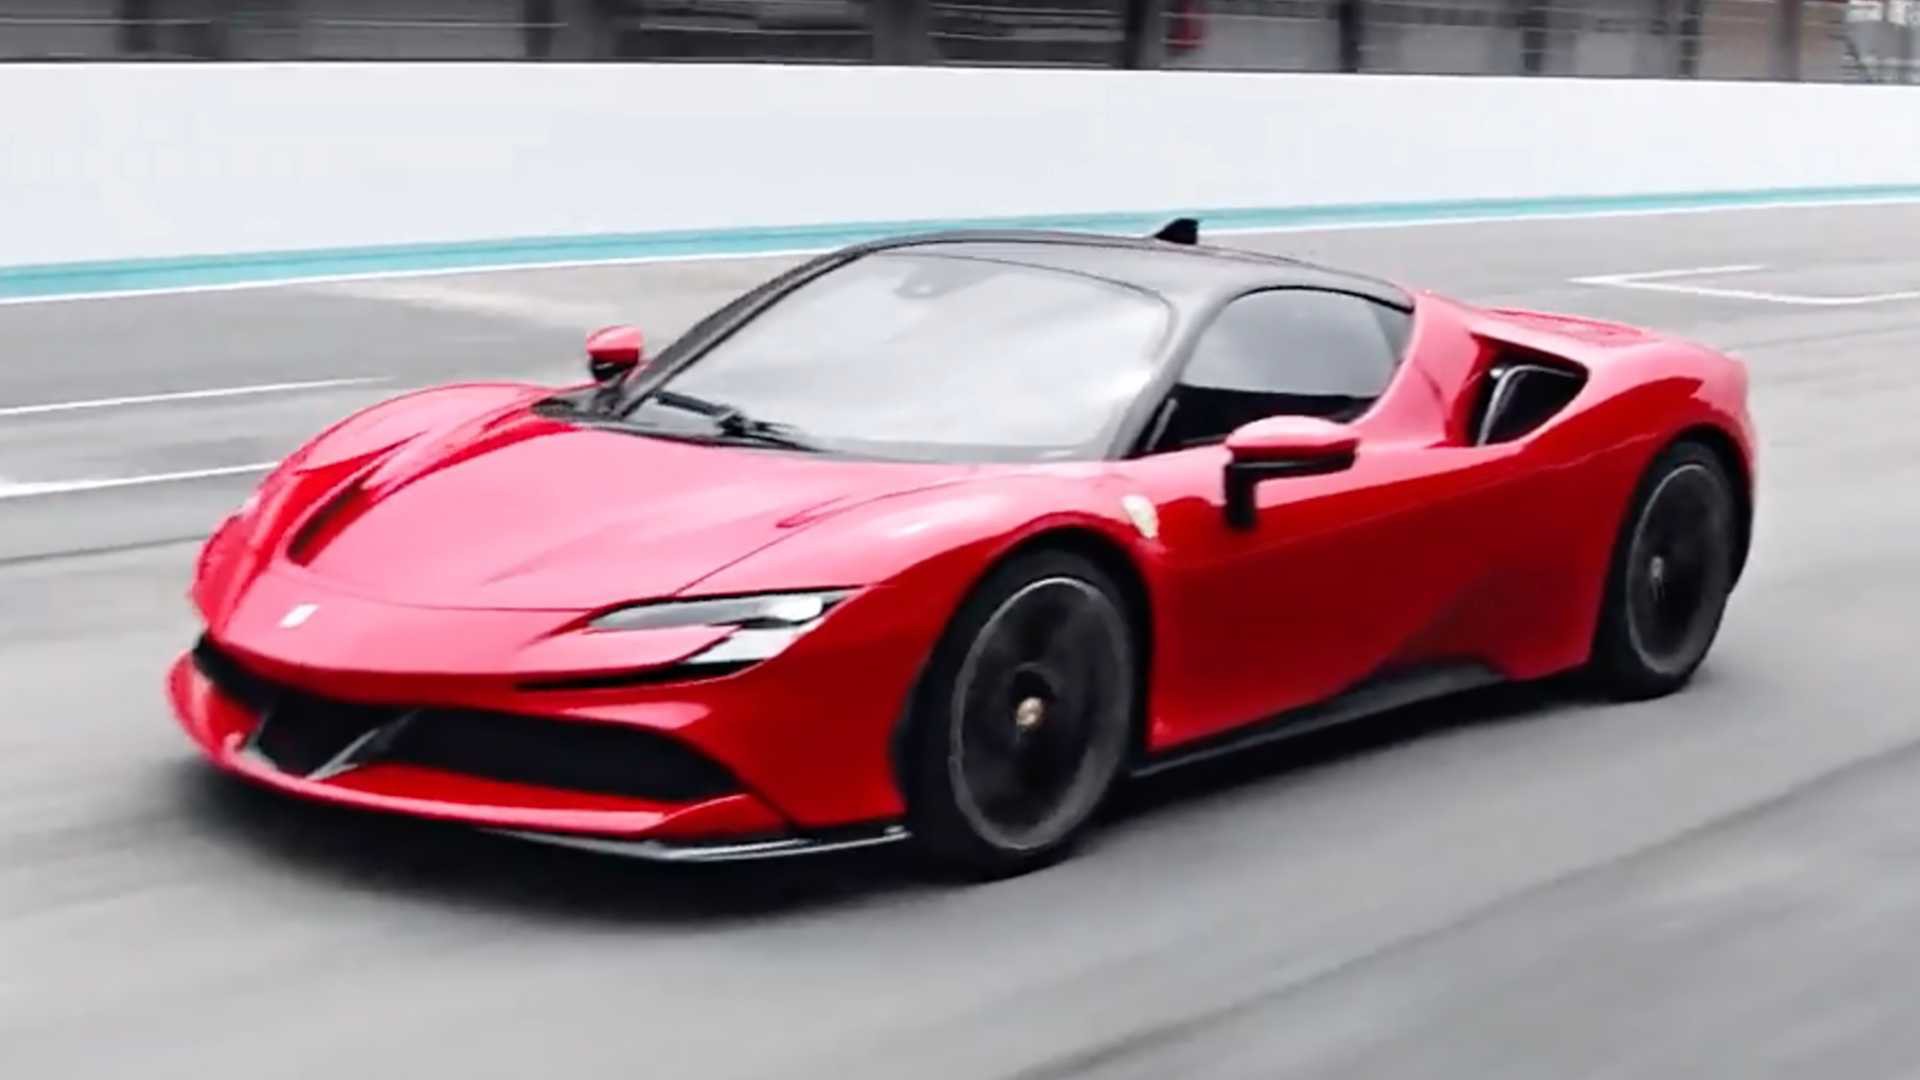 Ferrari úp mở siêu xe hoàn toàn mới ra mắt ngay tháng này: Sẽ là đàn em SF90 Stradale, chưa phải SUV đấu Lamborghini Urus như nhiều người trông đợi - Ảnh 2.